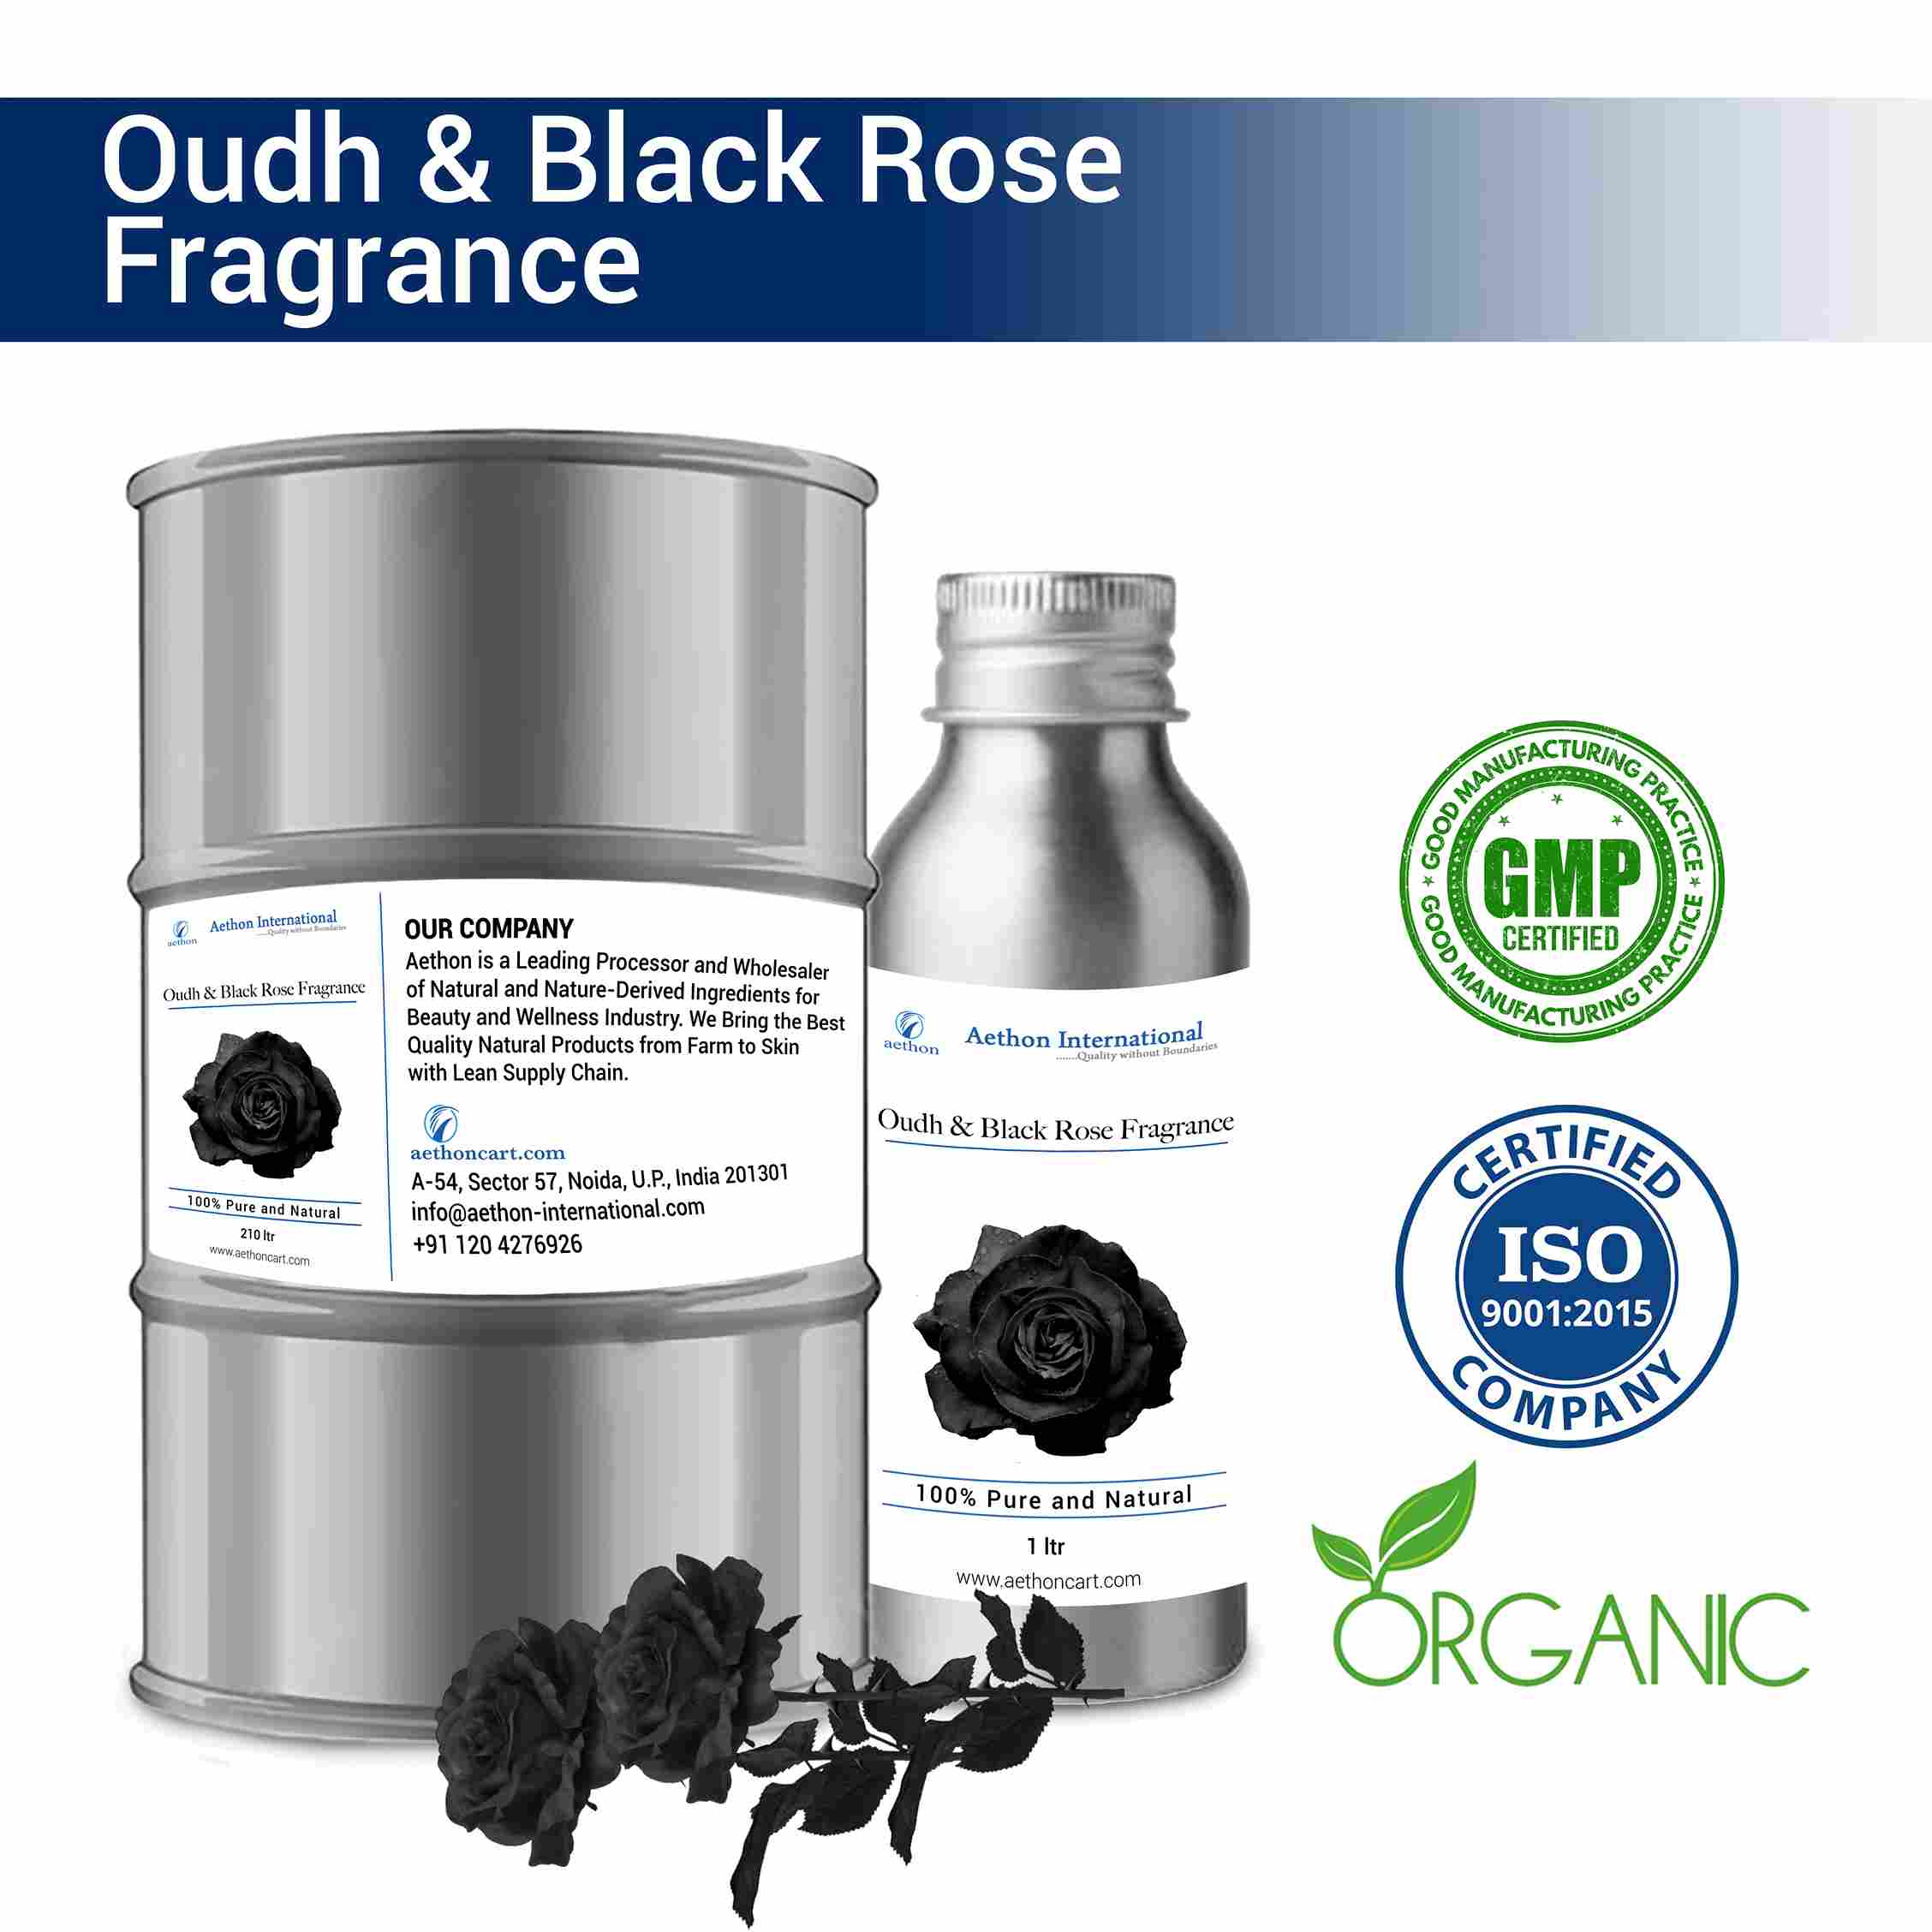 Oudh & Black Rose Fragrance